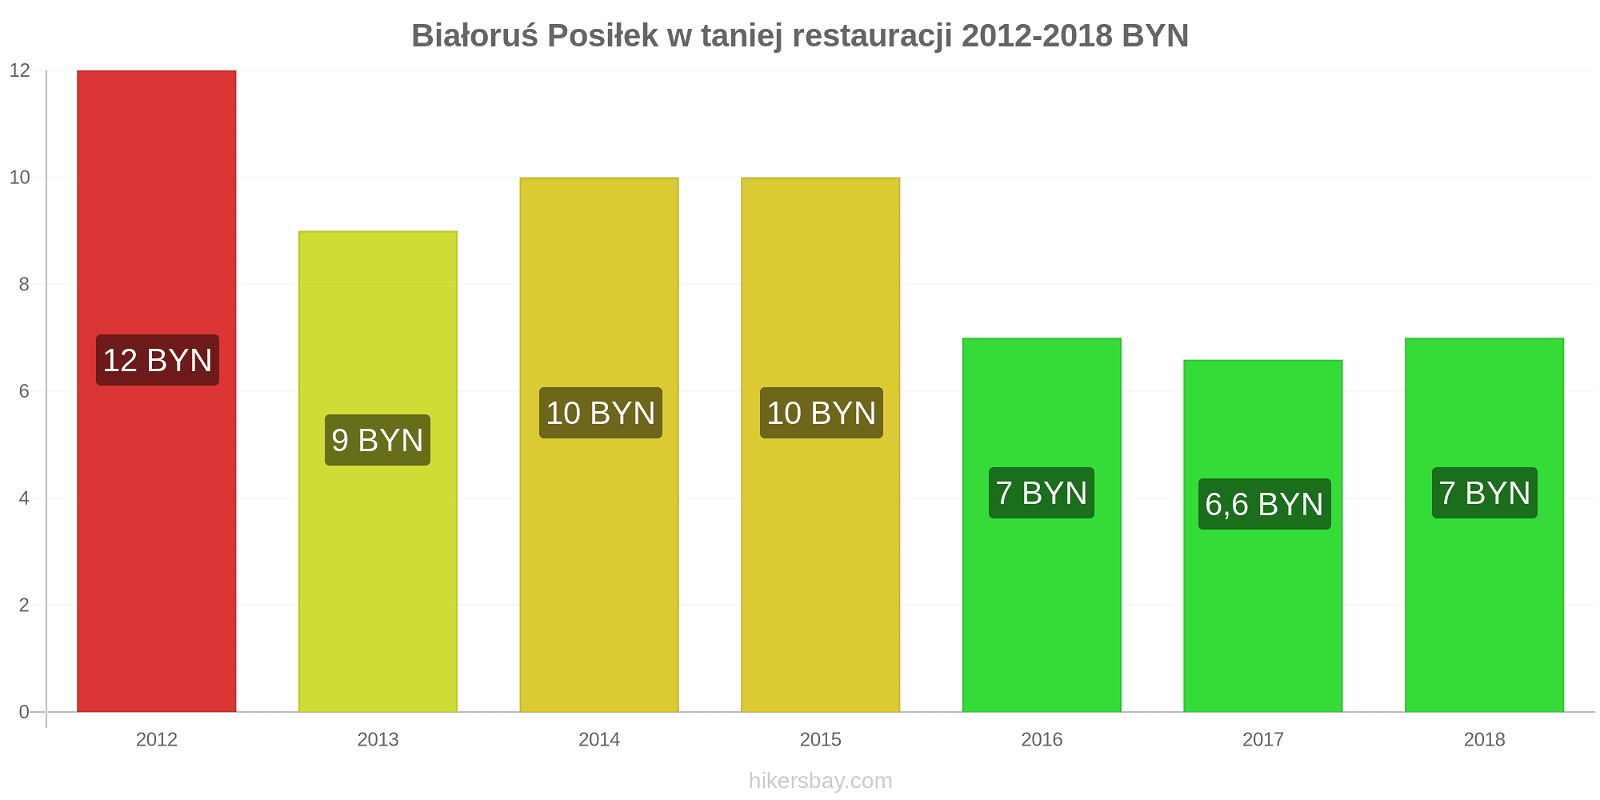 Białoruś zmiany cen Posiłek w taniej restauracji hikersbay.com